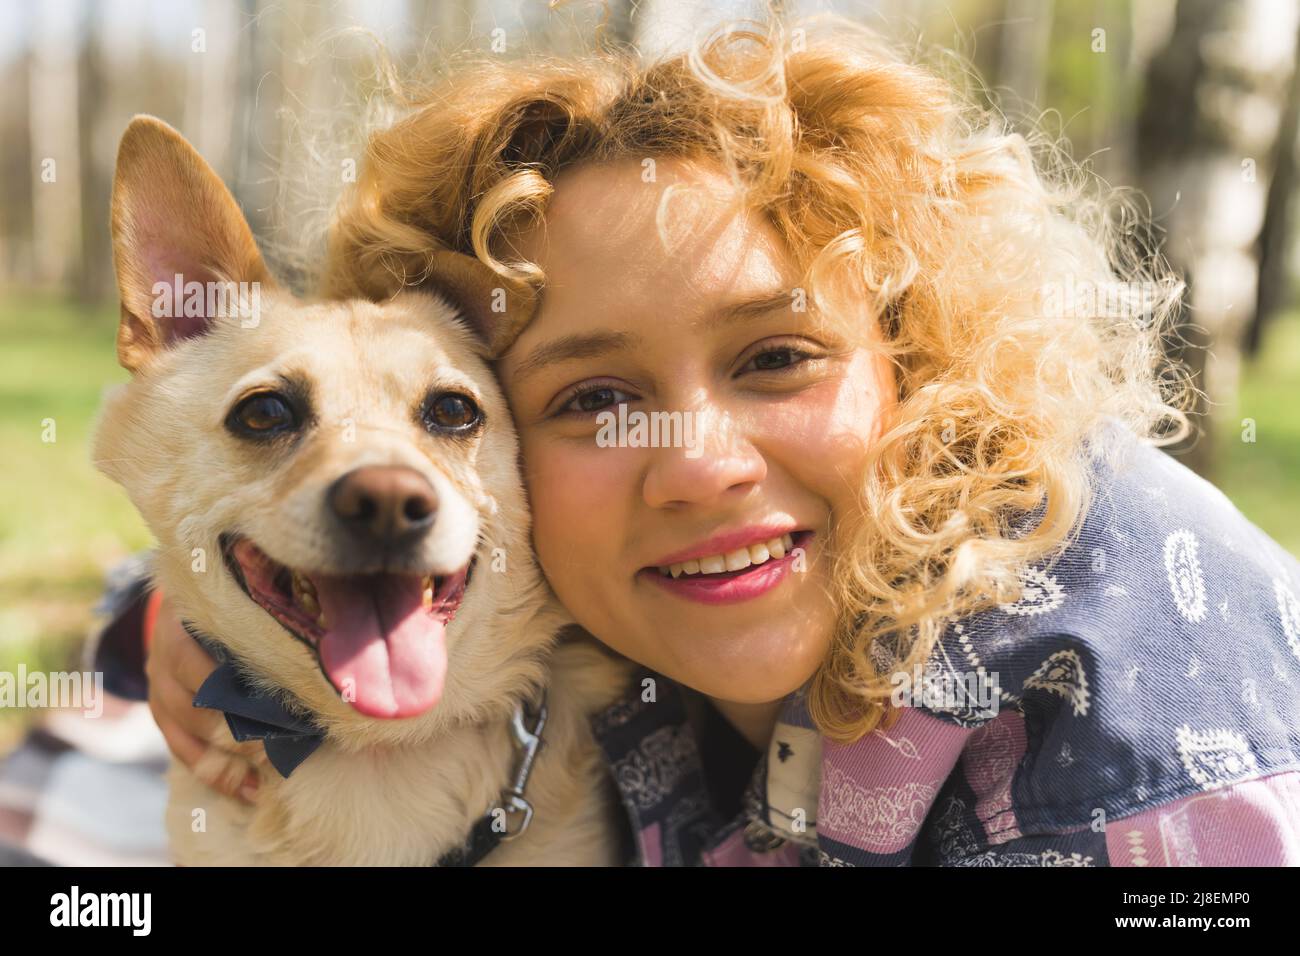 Im Freien Nahaufnahme Porträt einer fröhlichen schönen natürlichen kaukasischen Frau mit lockigen blonden Haaren und einem gemischten Rasse glücklichen Hund. Hochwertige Fotos Stockfoto